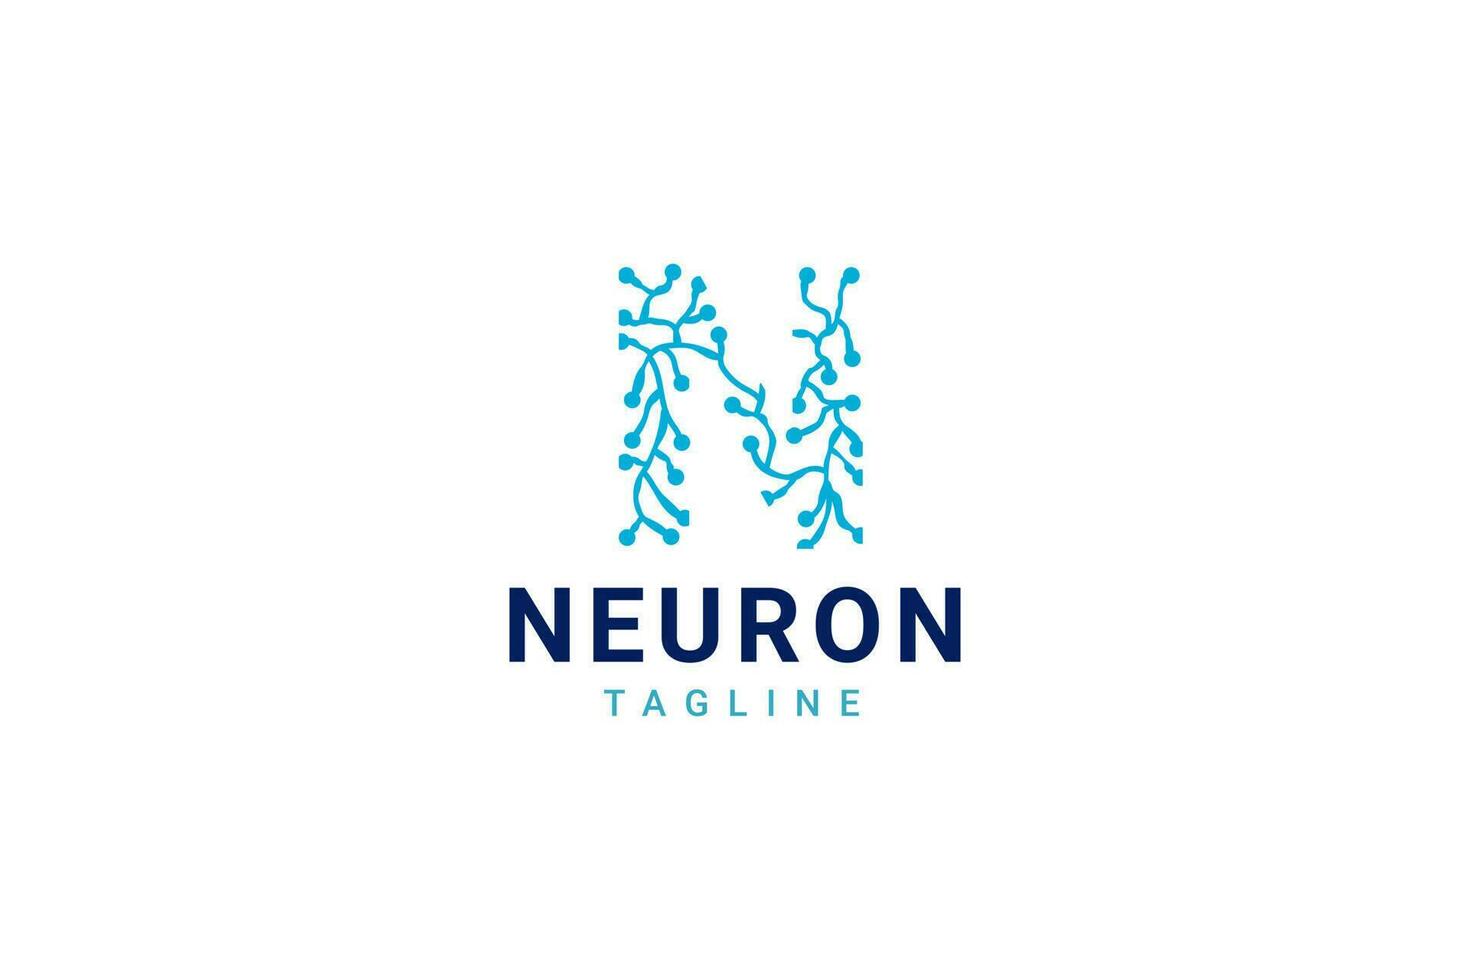 modelo de design de logotipo de célula nervosa de neurônio ou algas marinhas de coral vetor